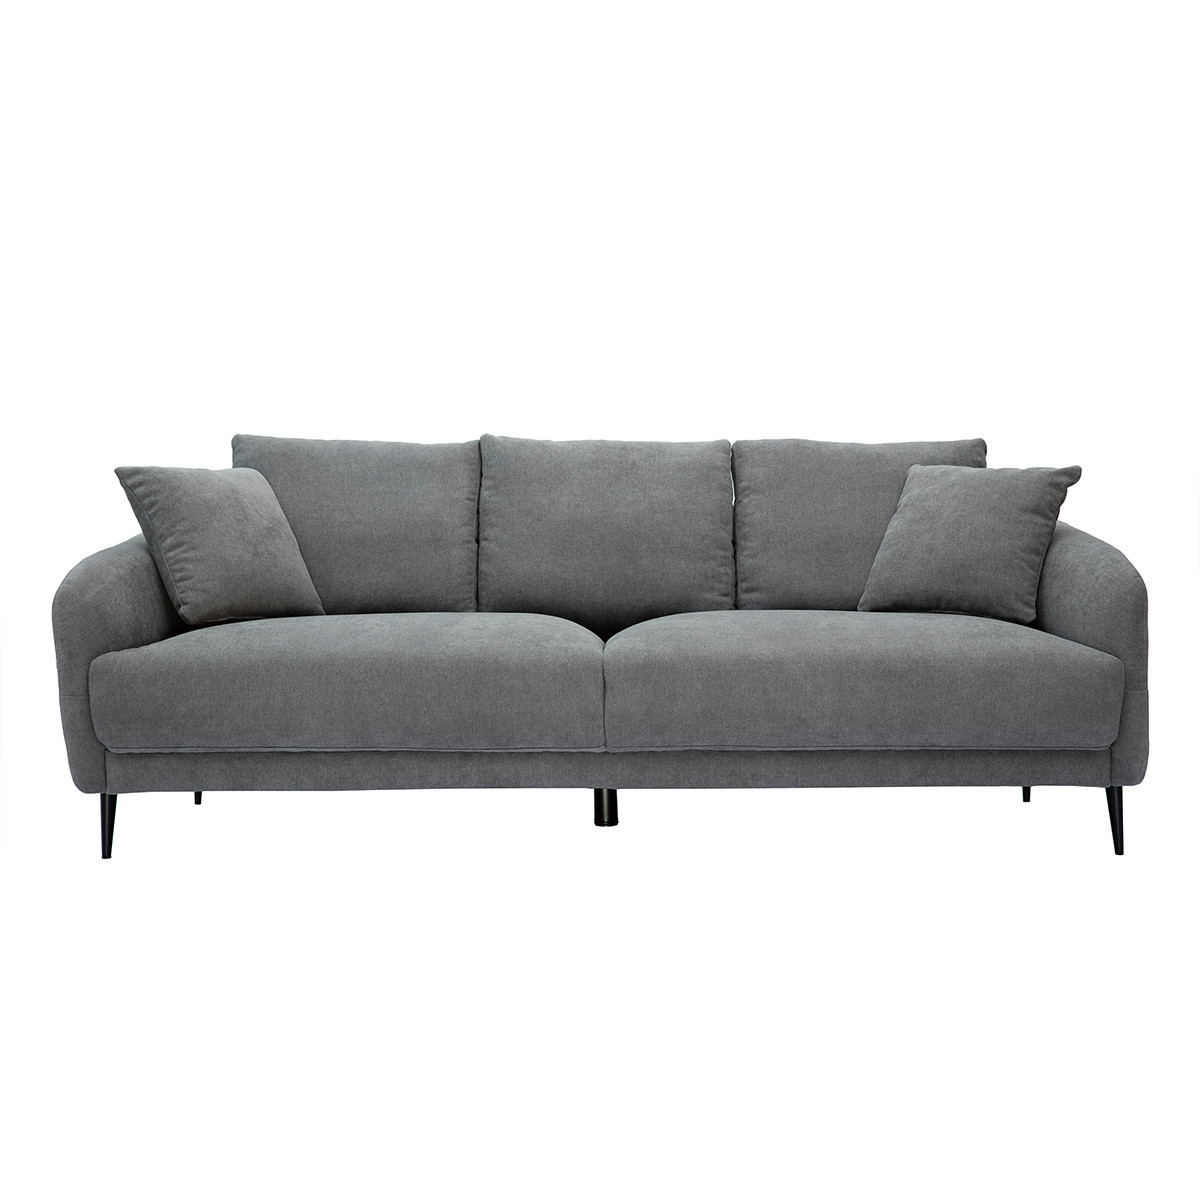 Canapé design 3 places en tissu effet velours gris et métal noir JERRY vue1